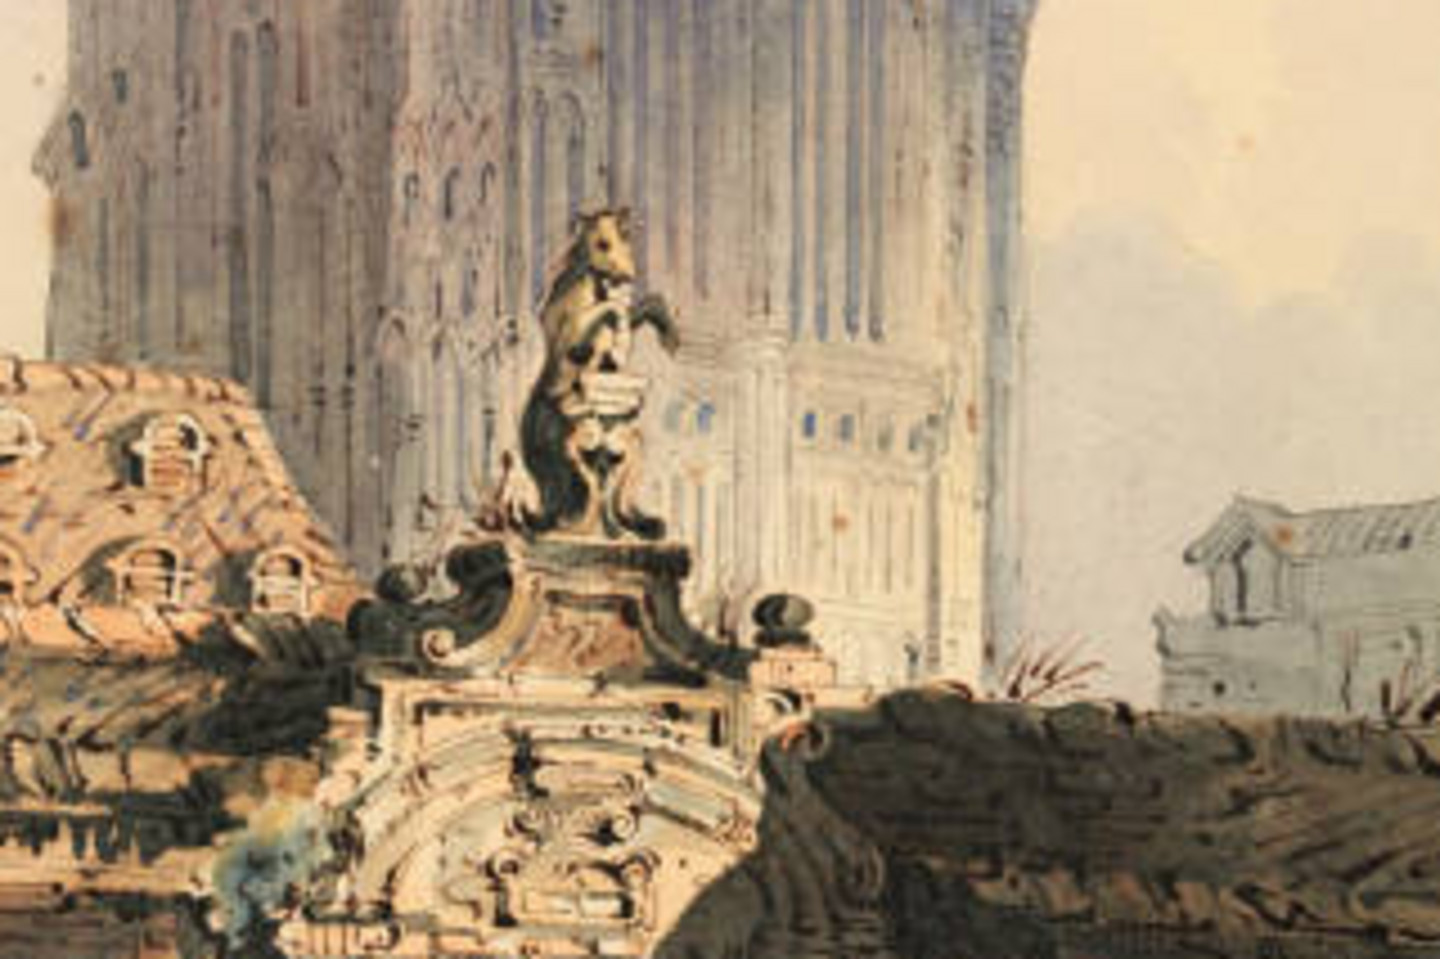 Südturm des Kölner Doms und alte Propstei (Zeichnung, Samuel Prout)